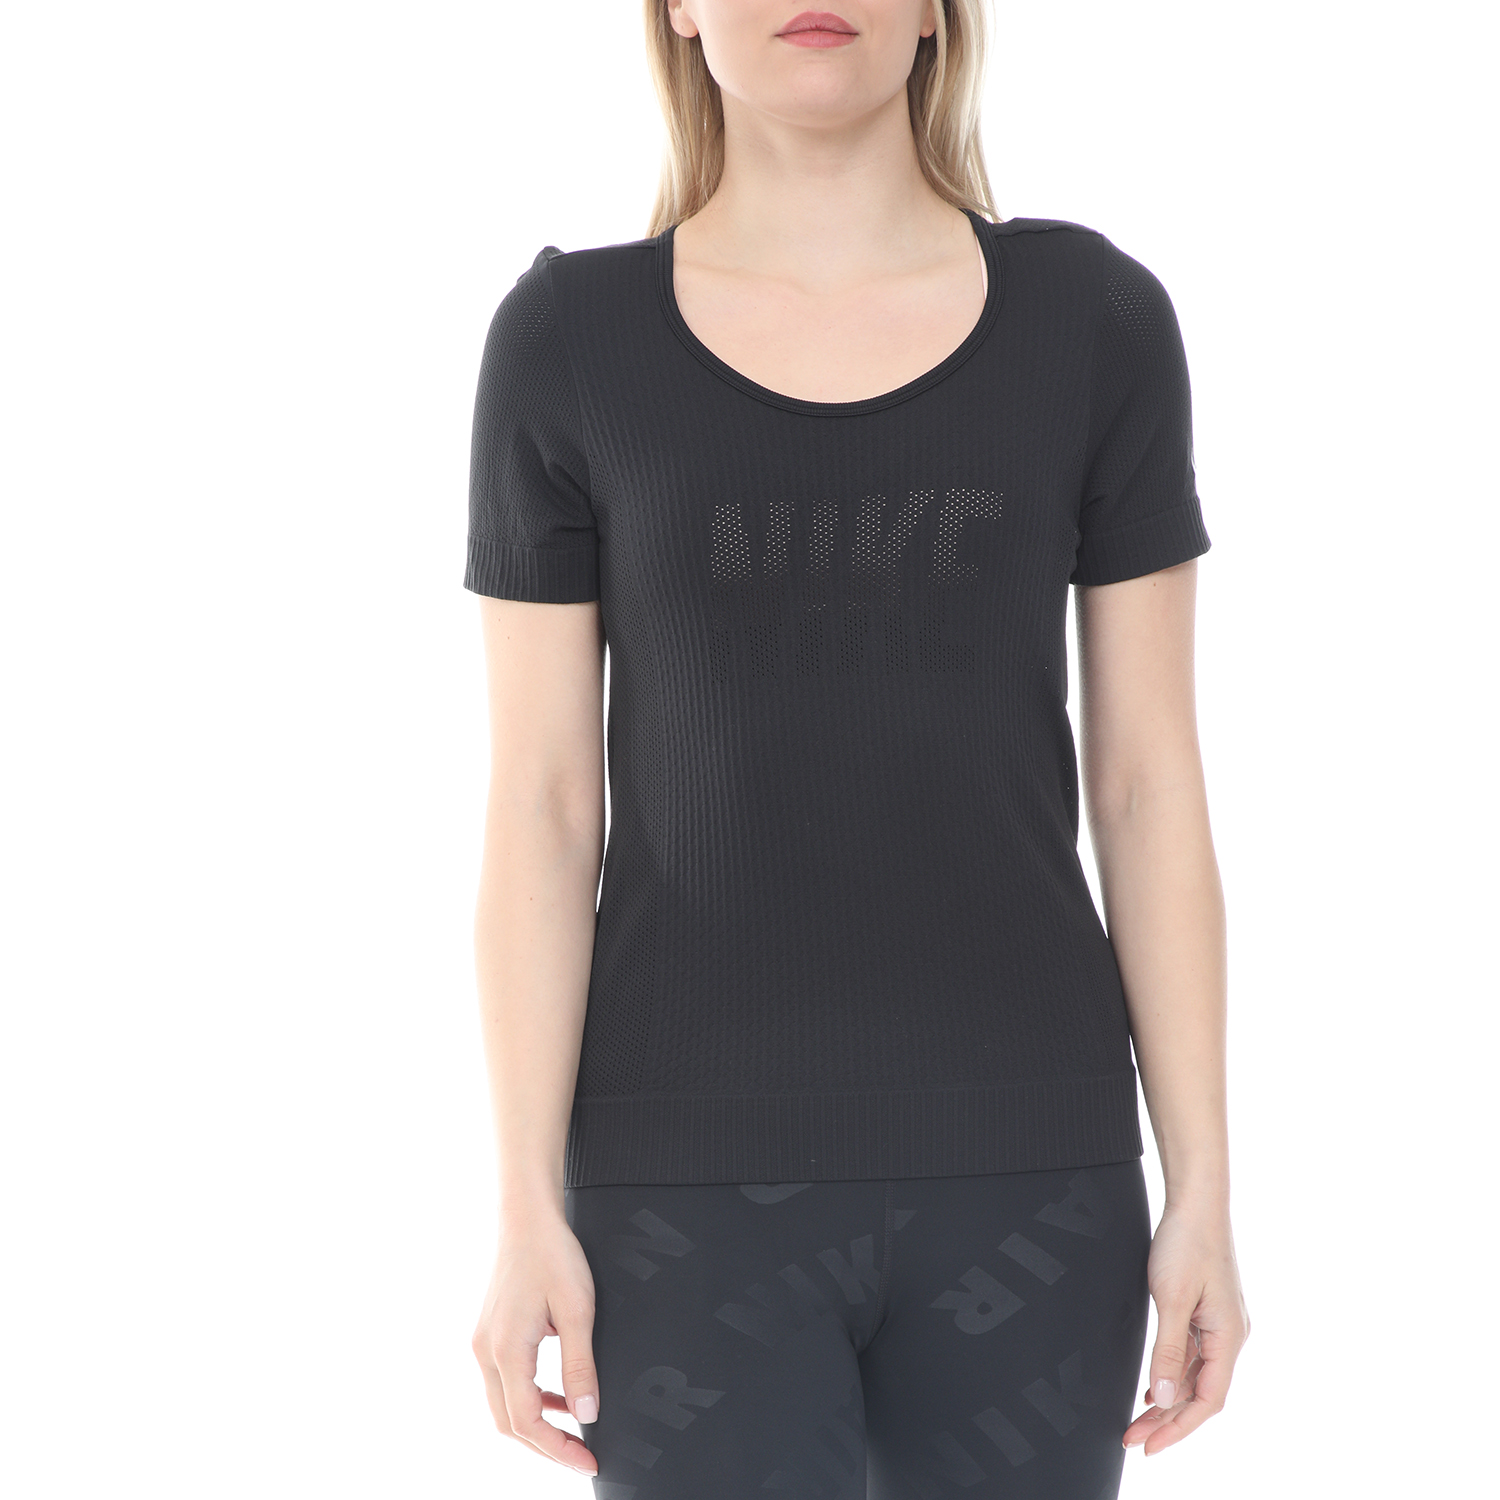 Γυναικεία/Ρούχα/Αθλητικά/T-shirt-Τοπ NIKE - Γυναικεία μπλούζα NIKE INFINITE TOP SS GX μαύρη